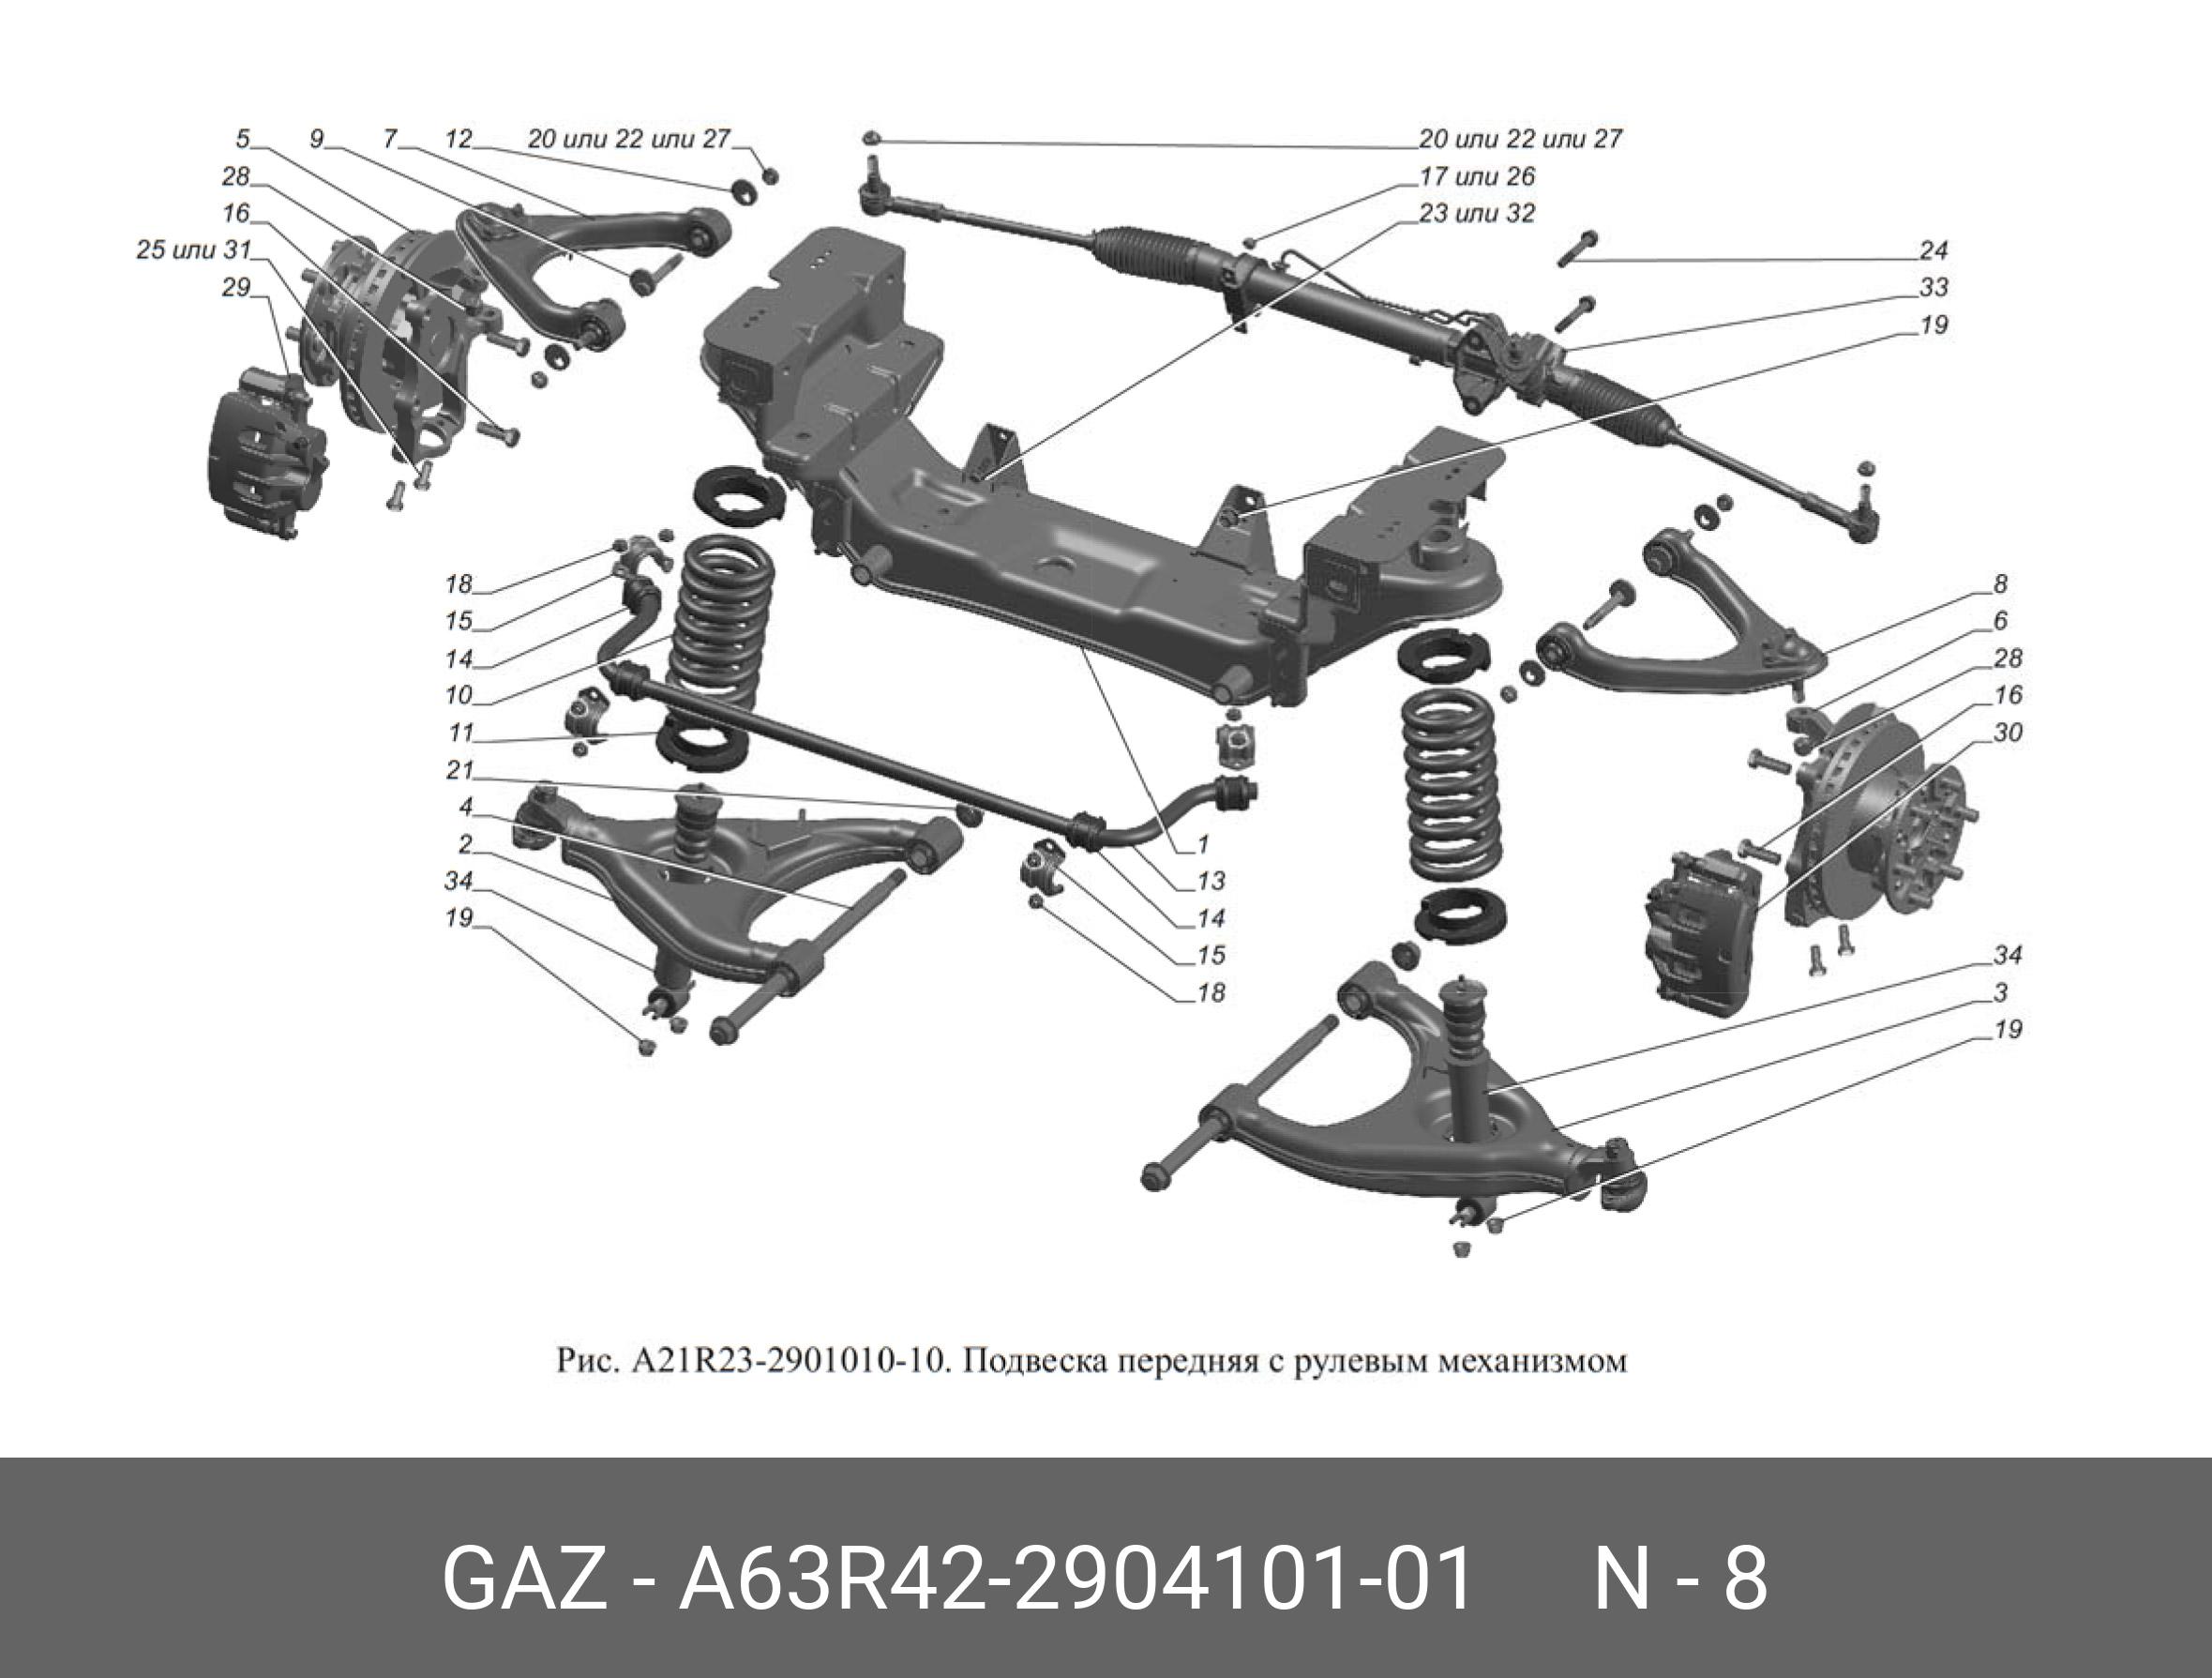 Рычаг подвески г-a63r42 верхний в сб левый - GAZ A63R42290410101